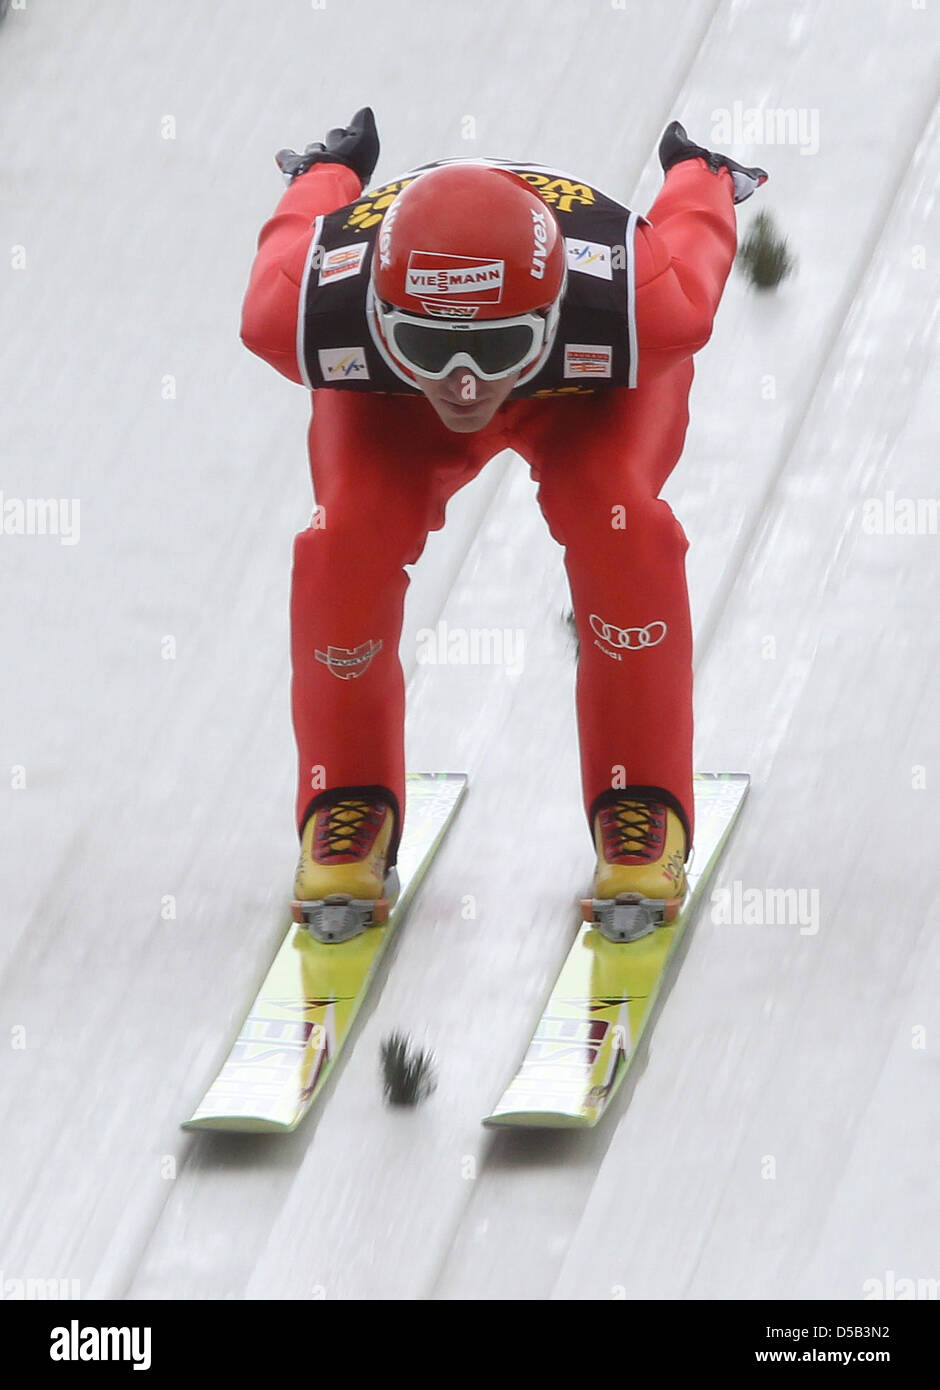 Der deutsche Skispringer Michael Uhrmann springt am Samstag (02.01.2010) in Innsbruck (Österreich) beim Trainingsdurchgang dritten Station der 58. Vierschanzentournee von der Bergiselschanze. Der weitere Trainingsdurchgang sowie die Qualifikation am Samstag wurden aufgrund der Wetterbedingungen abgesagt. Foto: Daniel Karmann dpa/lby Stock Photo